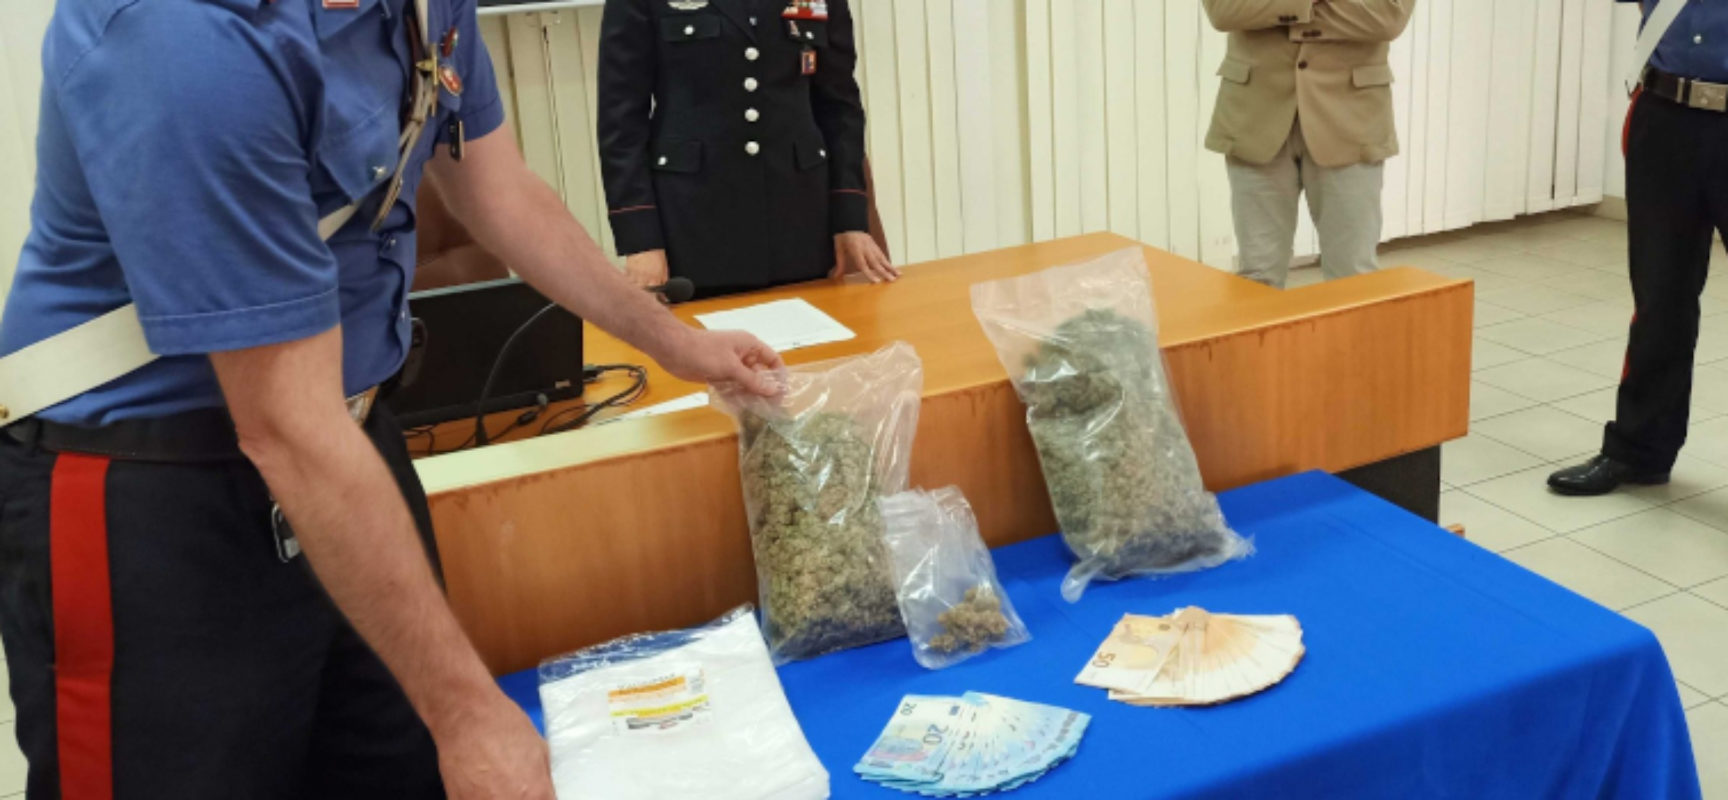 Traffico di droga in Umbria, arrestato 40enne biscegliese. Domiciliari per la compagna